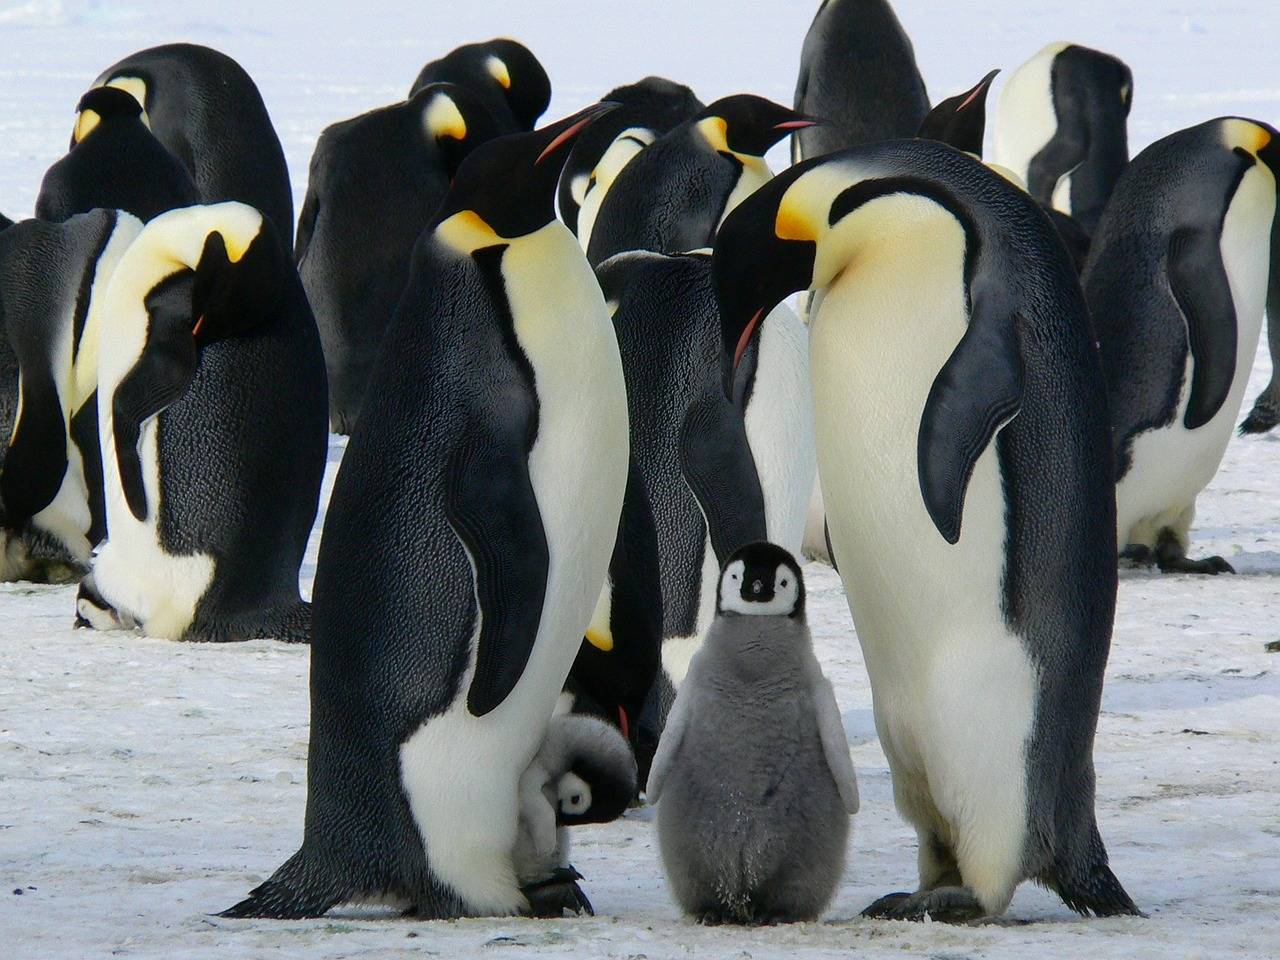 所以,我们还是不要把企鹅带到北极,让它们在南极安心地生活吧